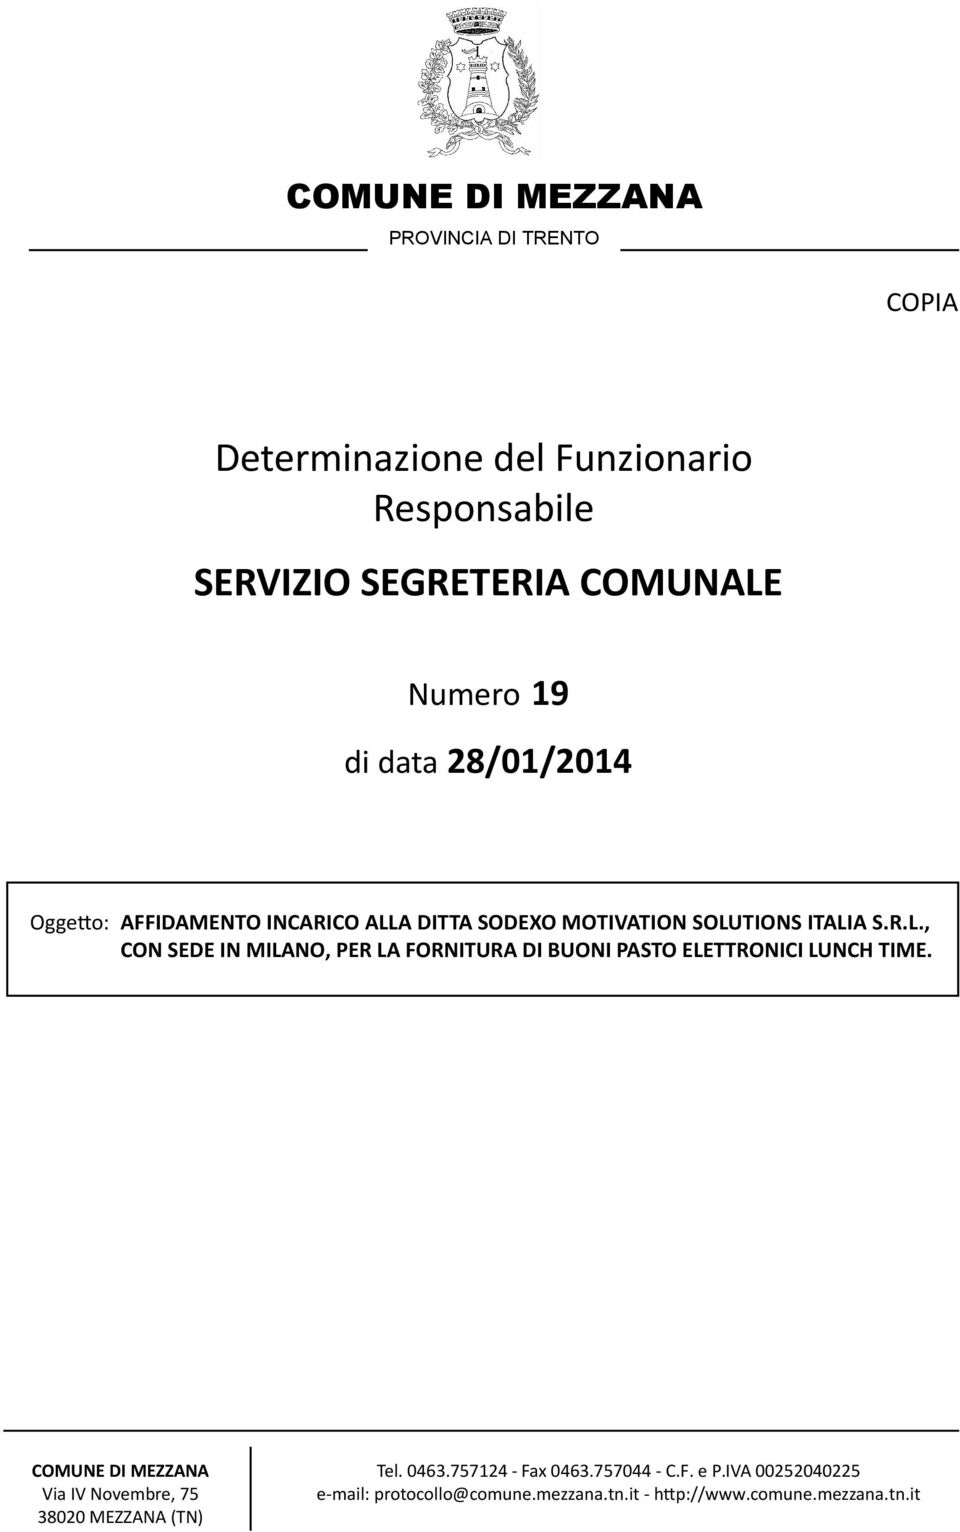 A DITTA SODEXO MOTIVATION SOLUTIONS ITALIA S.R.L., CON SEDE IN MILANO, PER LA FORNITURA DI BUONI PASTO ELETTRONICI LUNCH TIME.